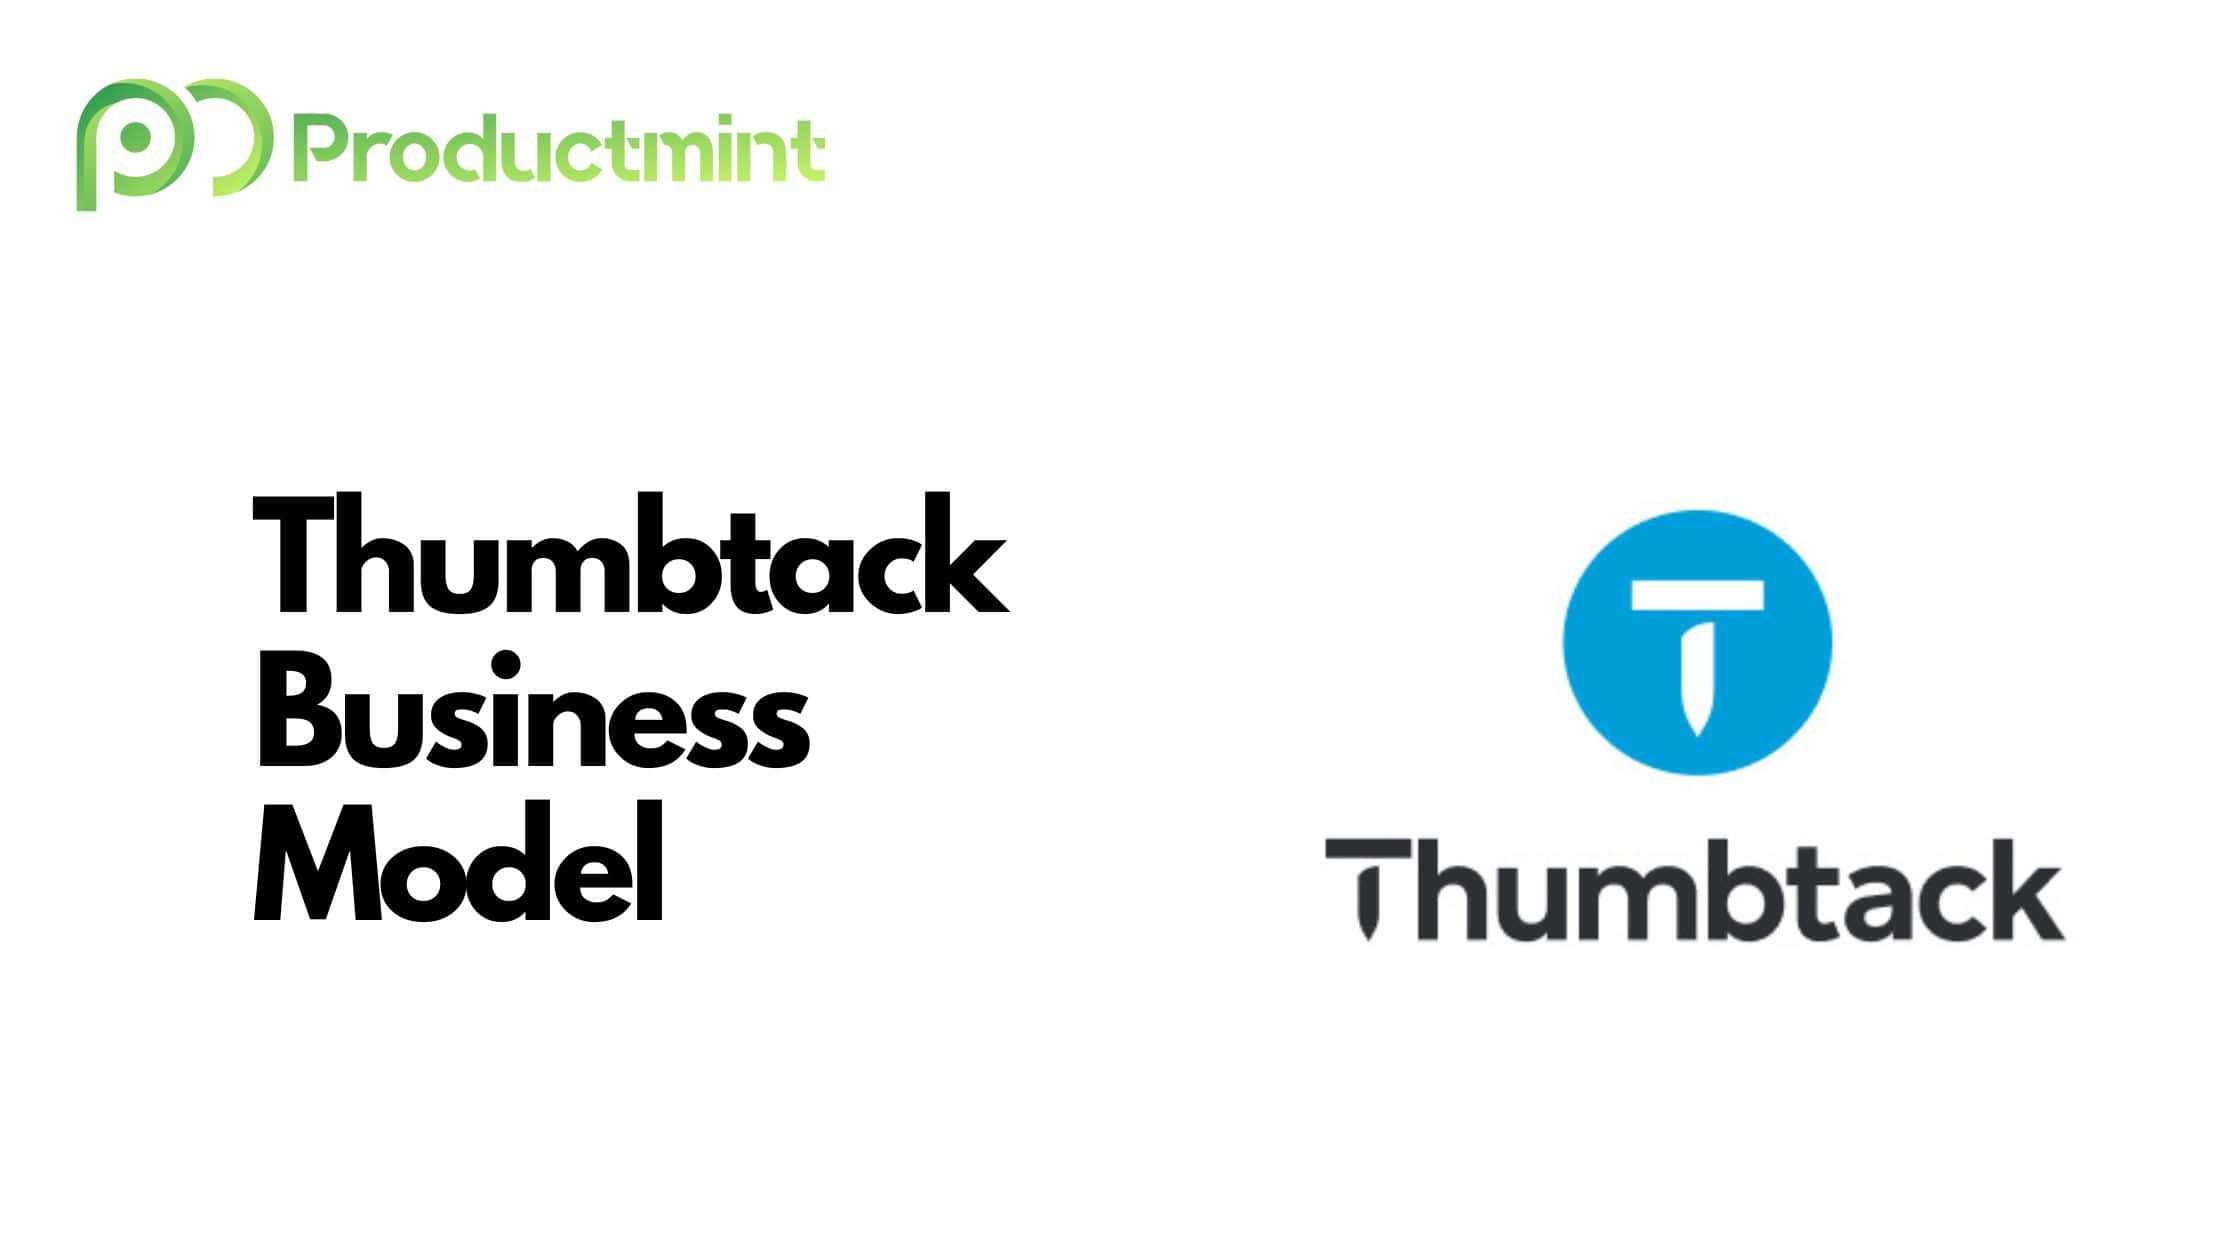 Thumbtack Business Model